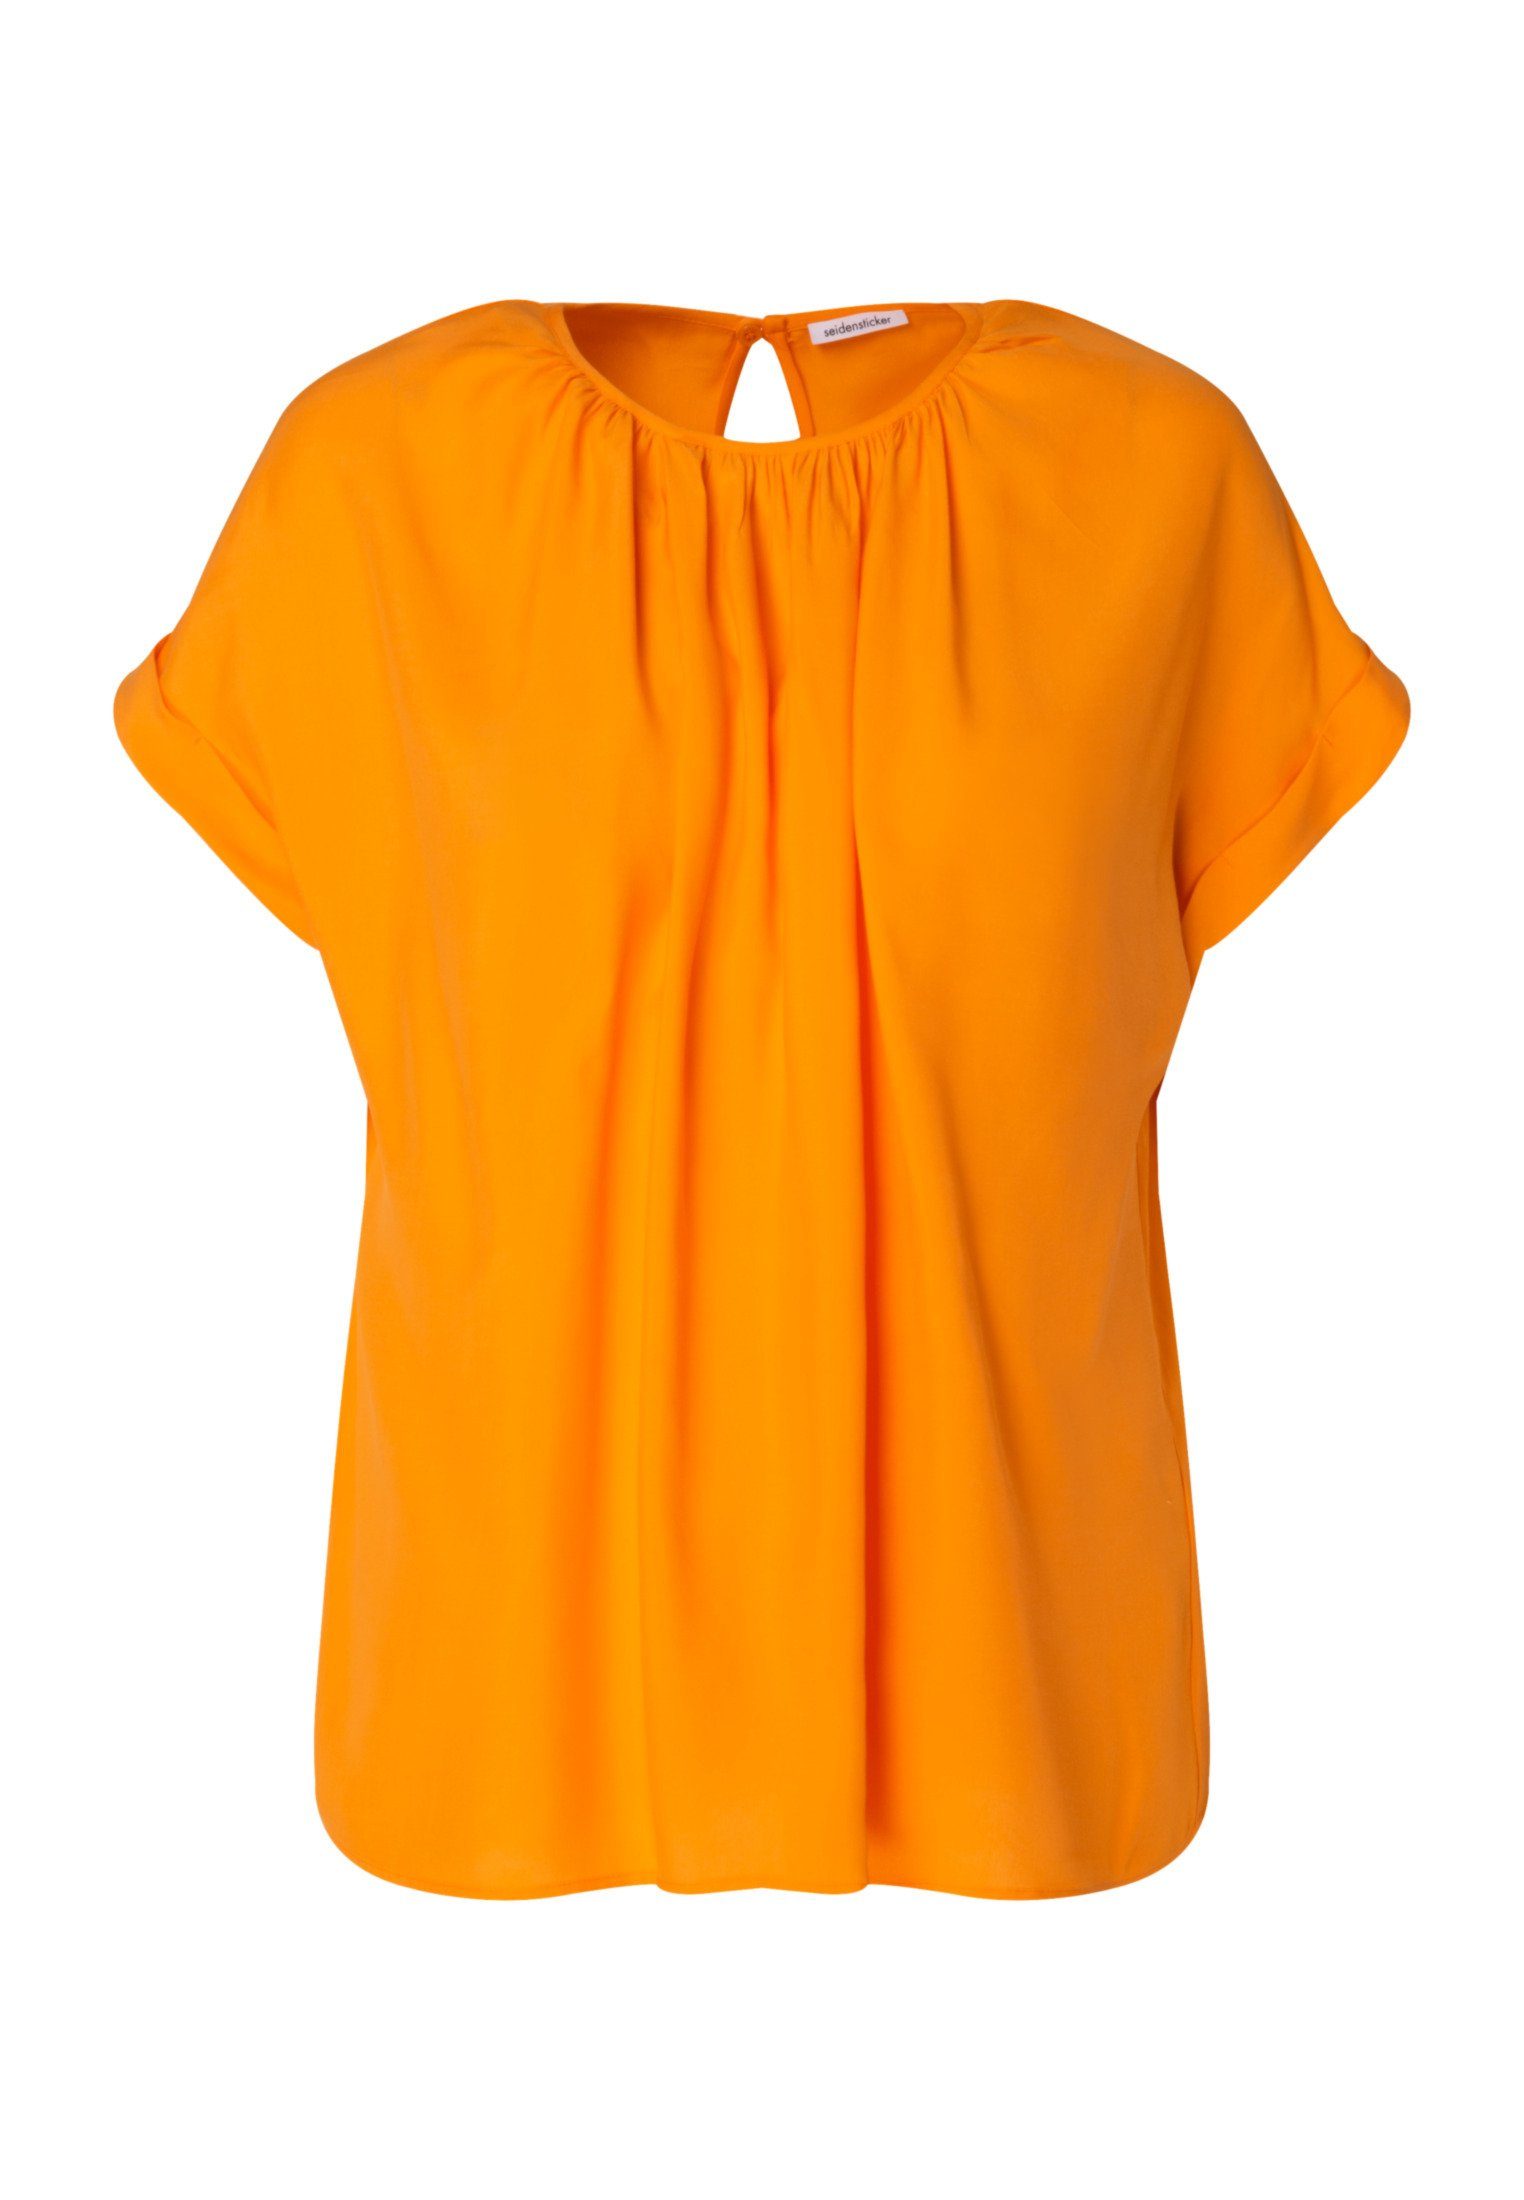 seidensticker Shirtbluse Schwarze Rose Kurzarm Rundhals Uni Orange